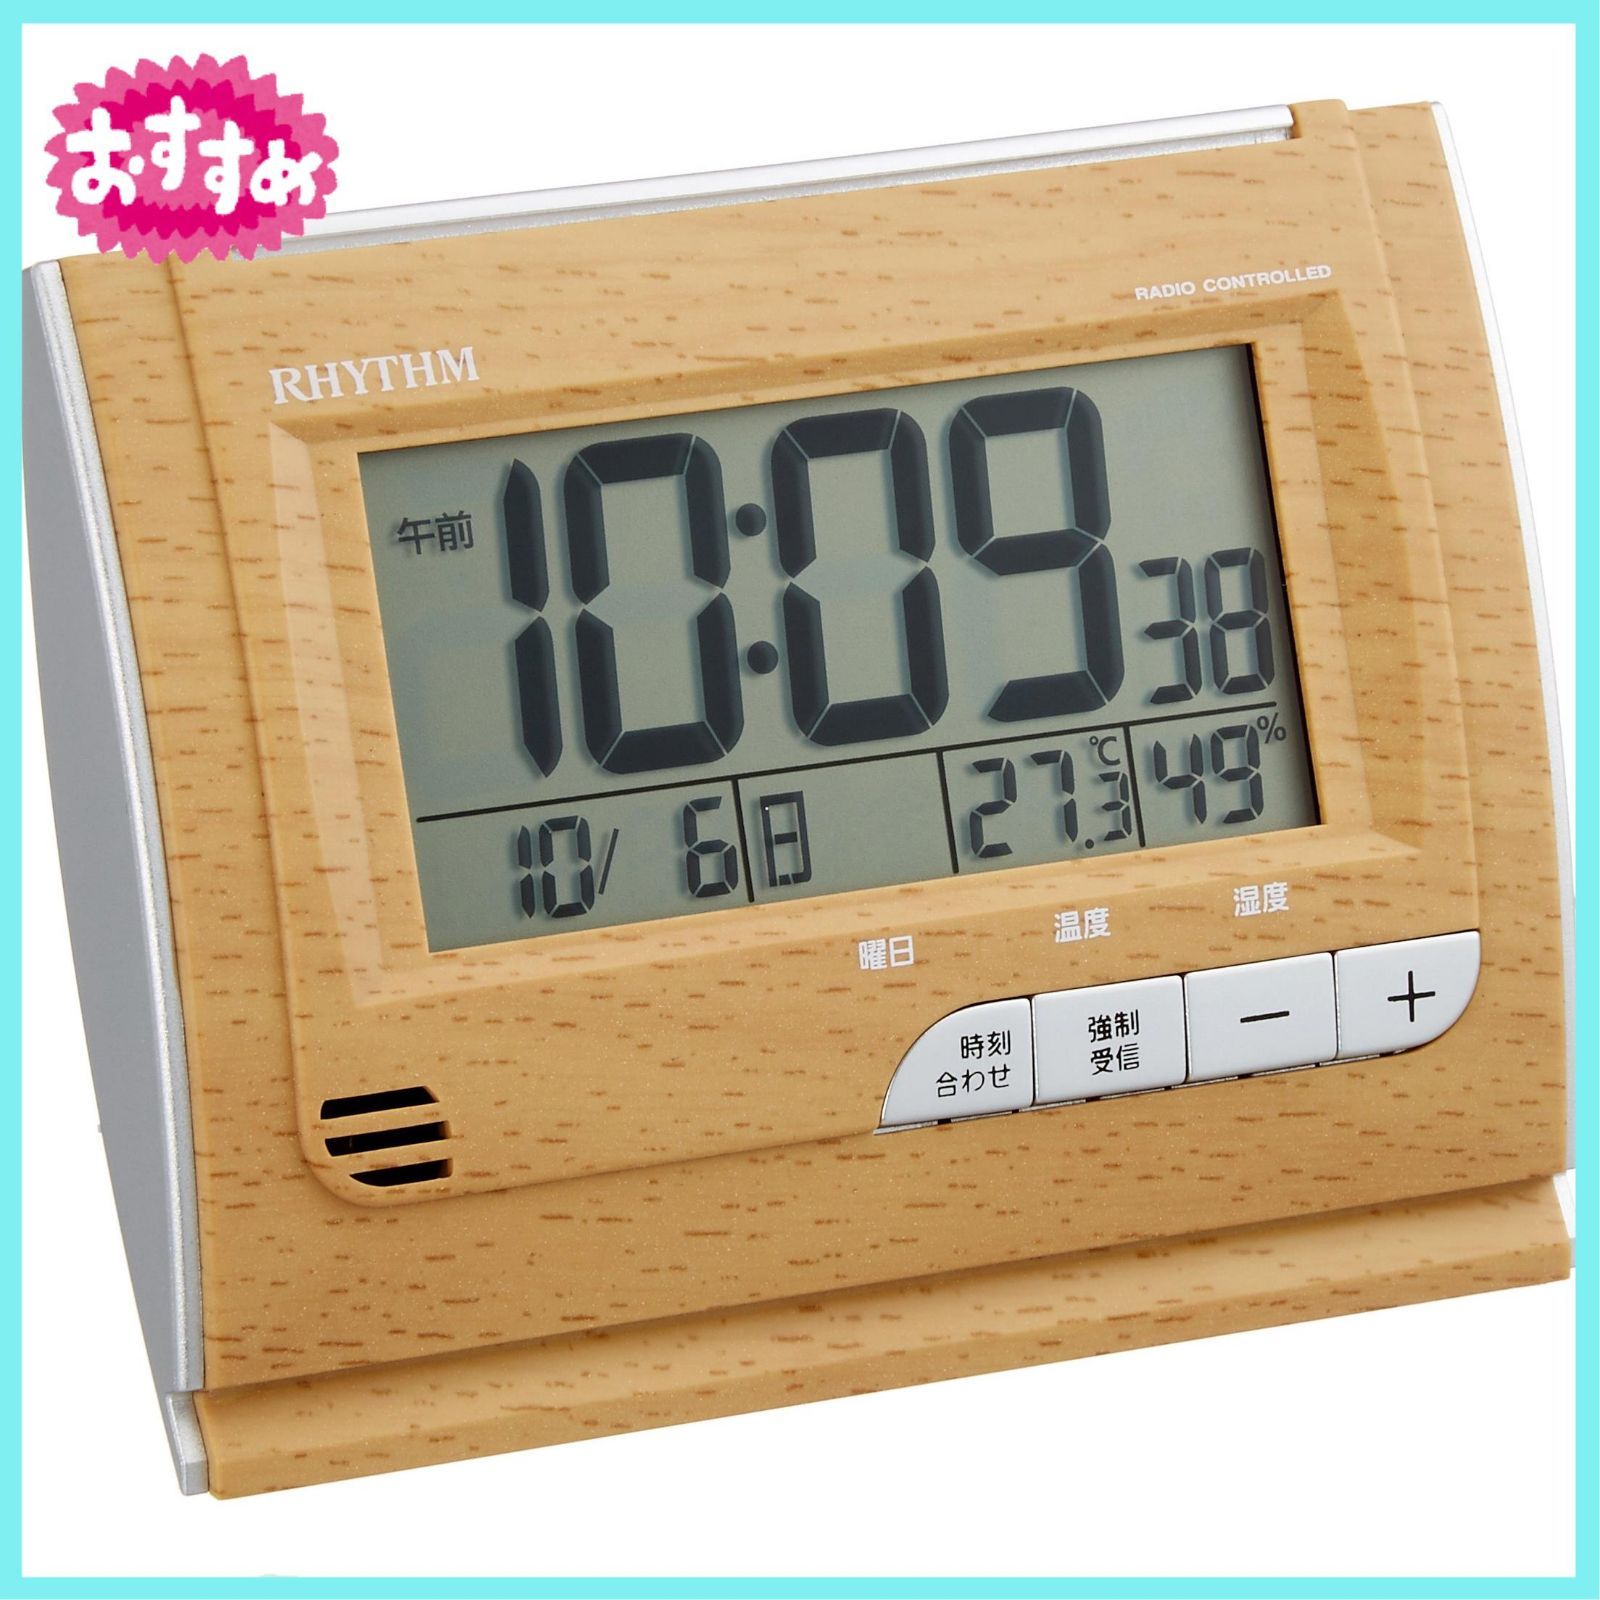 リズム(RHYTHM) 目覚まし時計 電波時計 デジタル 温度 ・ 湿度 カレンダー 付 茶 (薄茶木目仕上) フィットウェーブD165  8RZ165SR07